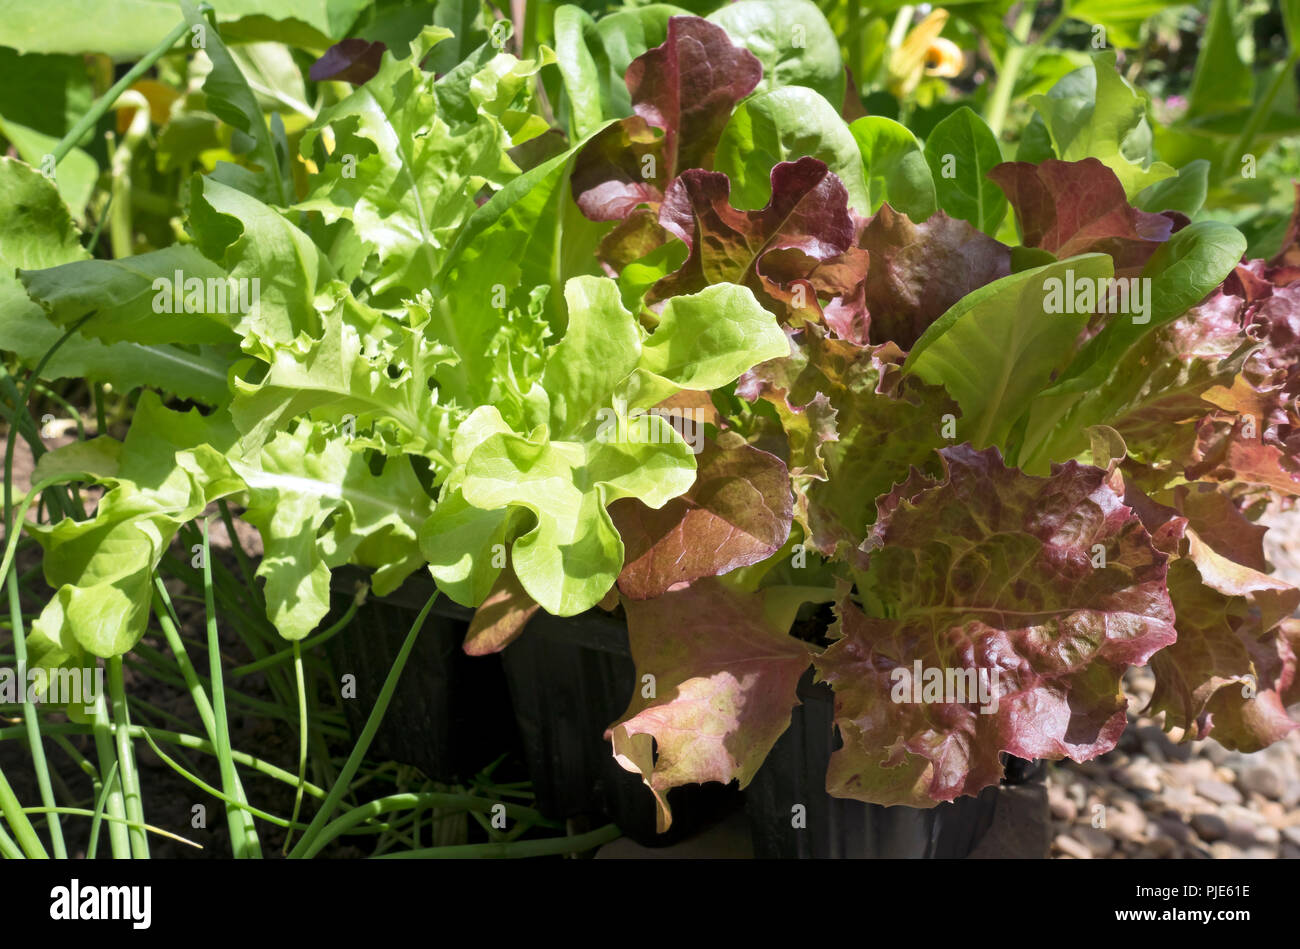 Gros plan sur les feuilles de laitue à salade mélangée qui poussent dans un récipient en pot en Angleterre d'été Royaume-Uni Grande-Bretagne Banque D'Images